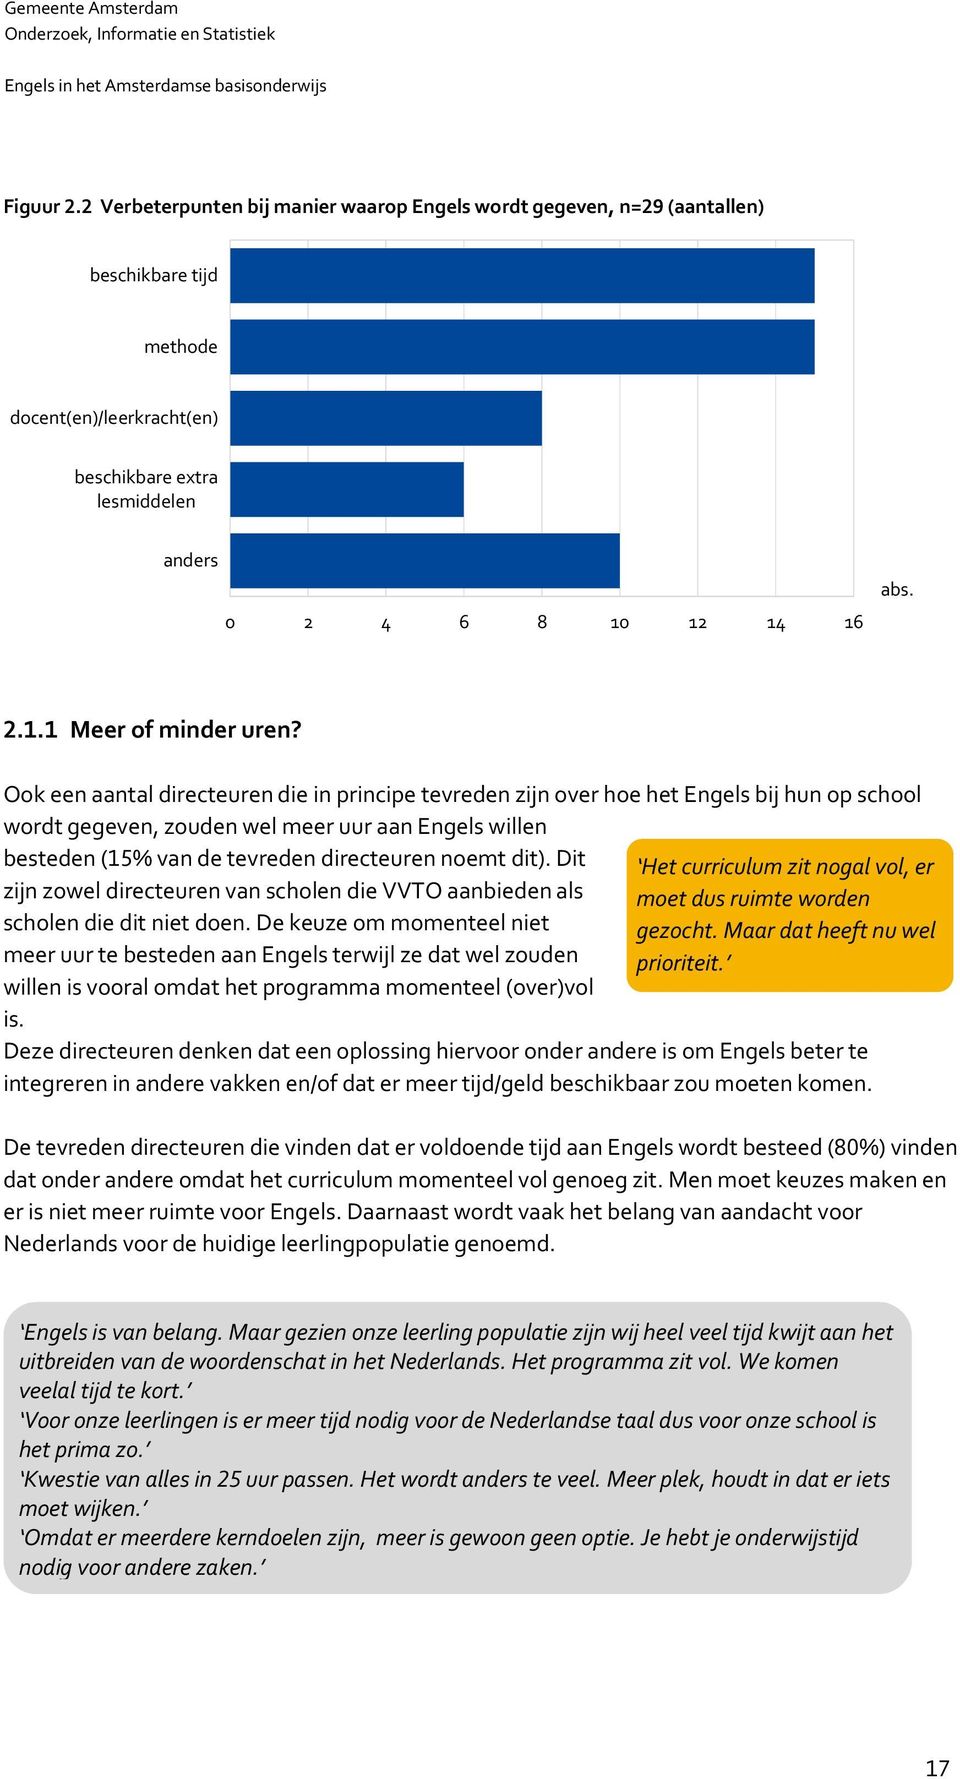 Ook een aantal directeuren die in principe tevreden zijn over hoe het Engels bij hun op school wordt gegeven, zouden wel meer uur aan Engels willen besteden (% van de tevreden directeuren noemt dit).